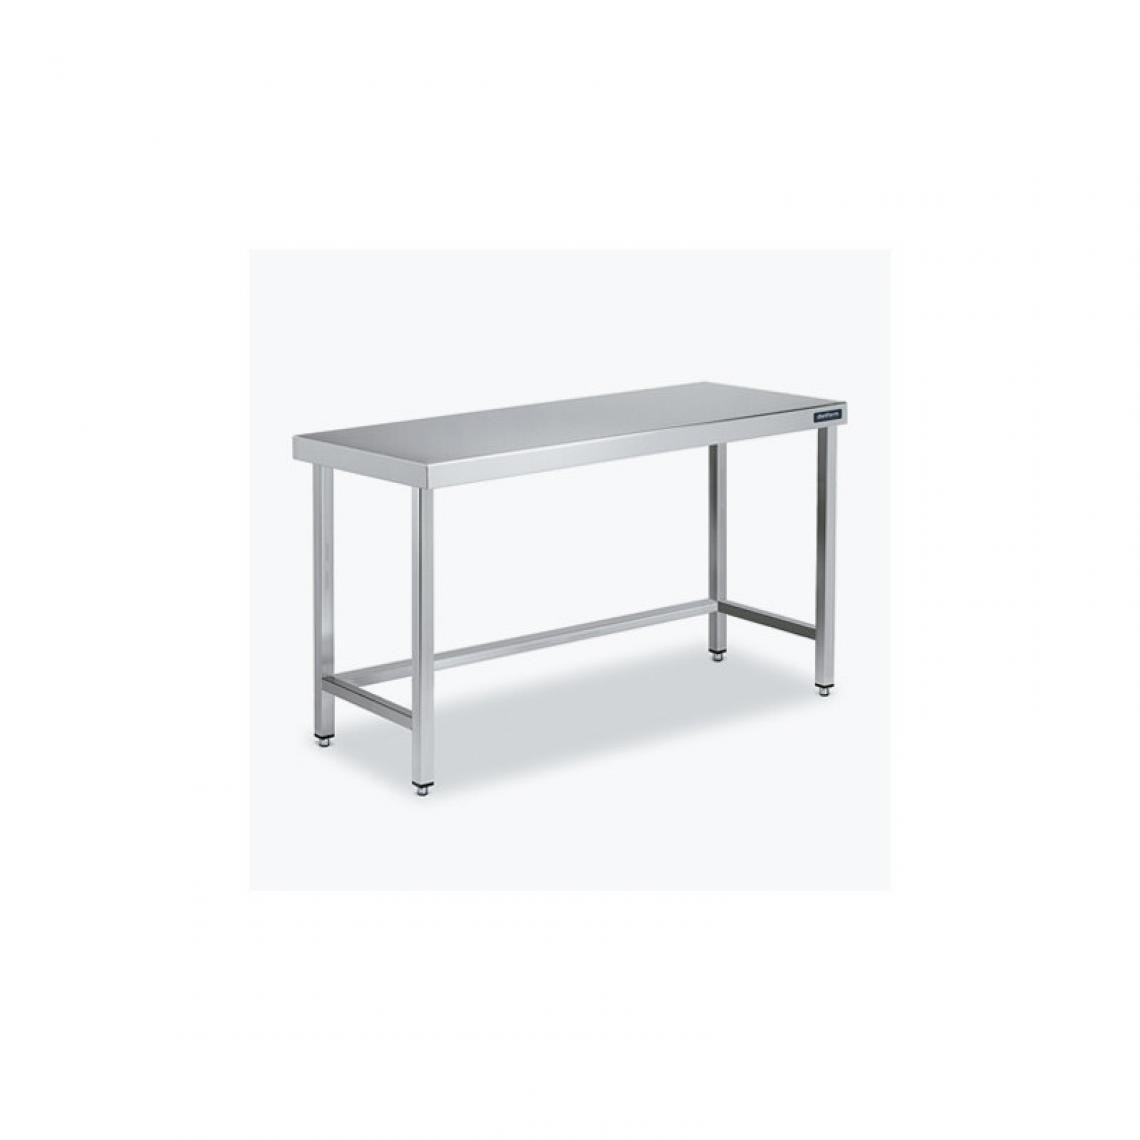 DISTFORM - Table Centrale 600x600 avec Renforts - Distform - Inox 18/10900x600x850mm - Tables à manger